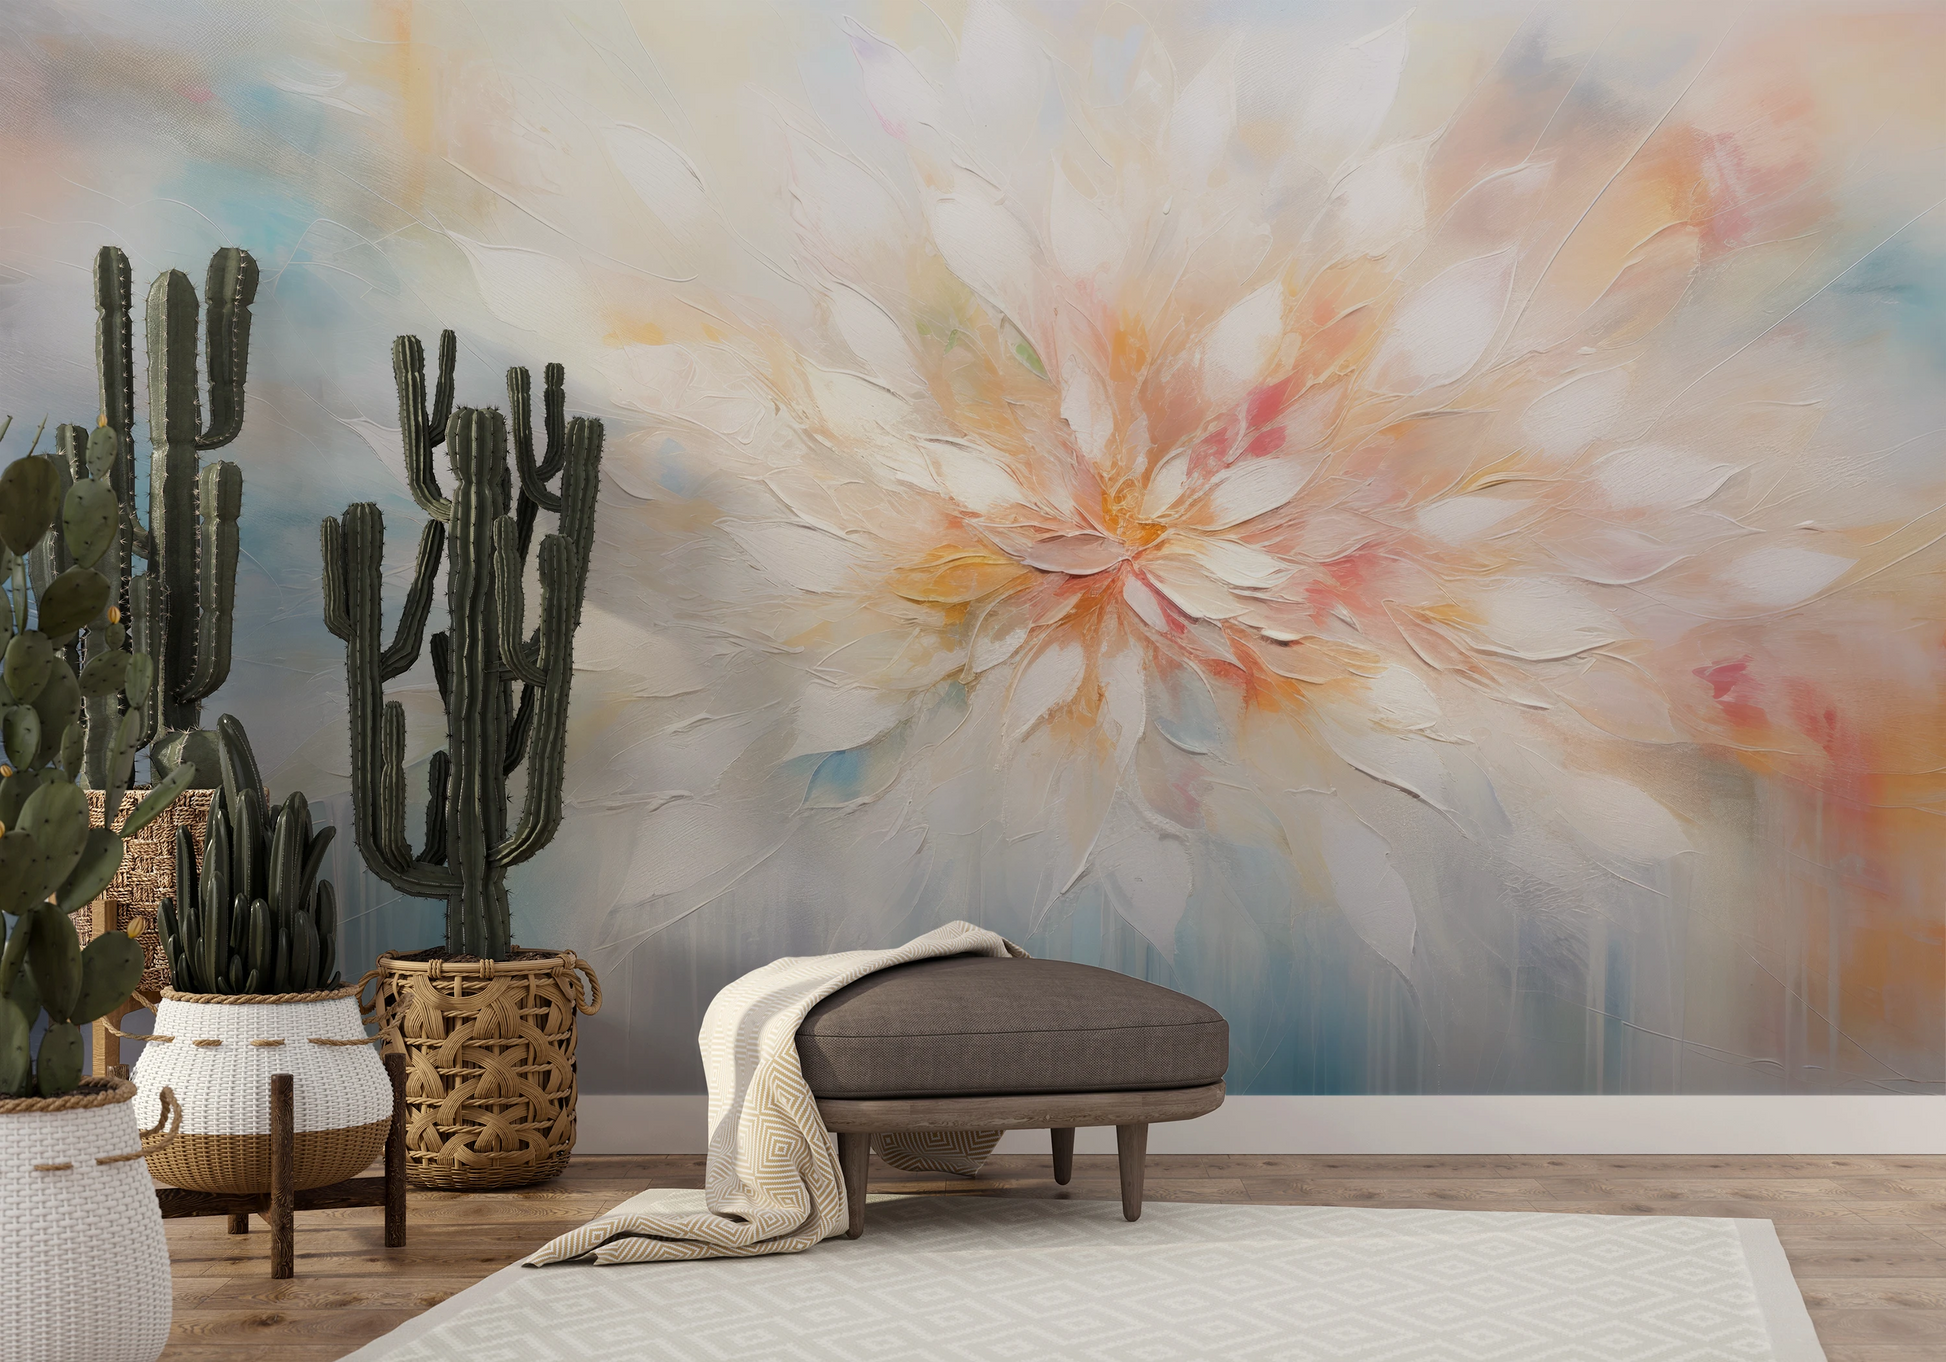 Fototapeta artystyczna o nazwie Ethereal Blossom pokazana w aranżacji wnętrza.